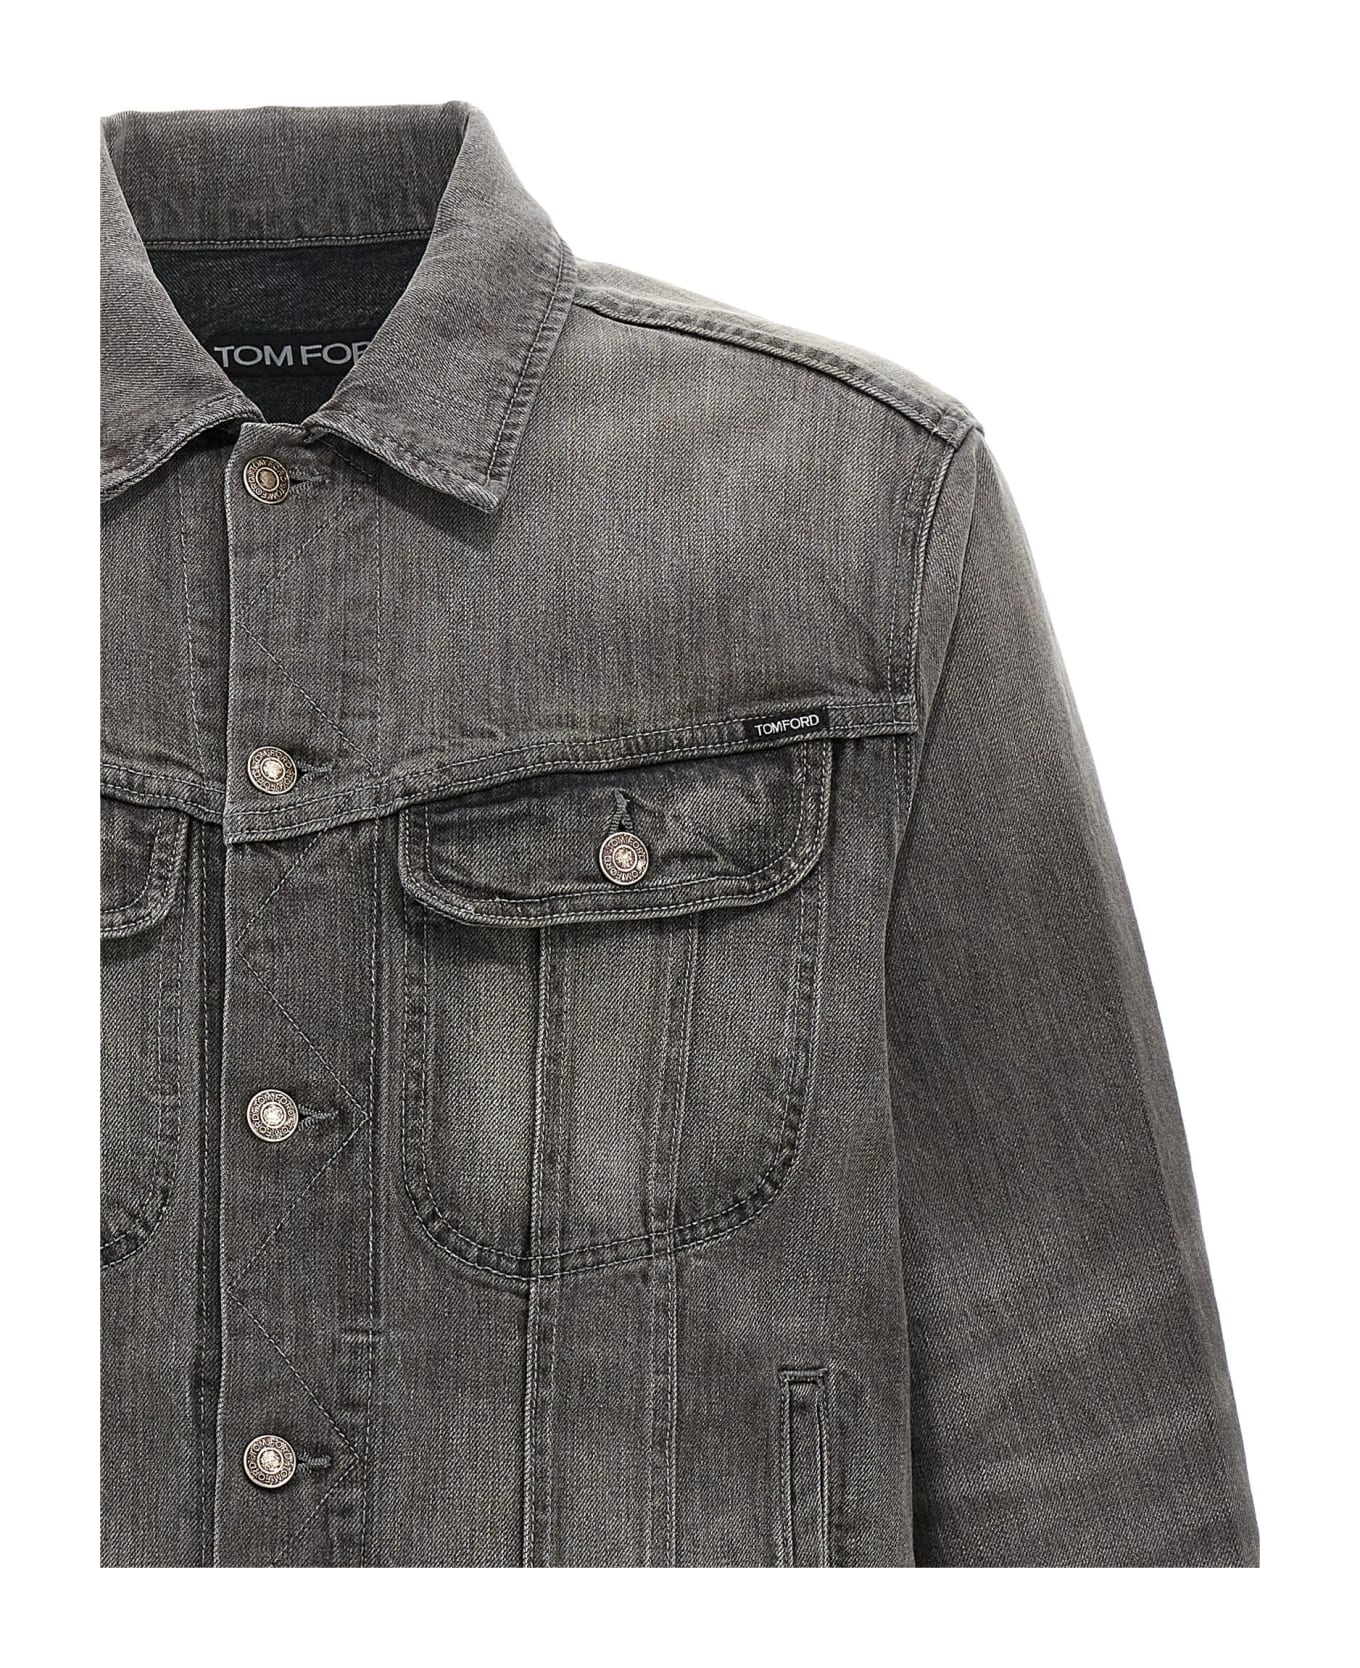 Tom Ford Denim Jacket - Gray ジャケット